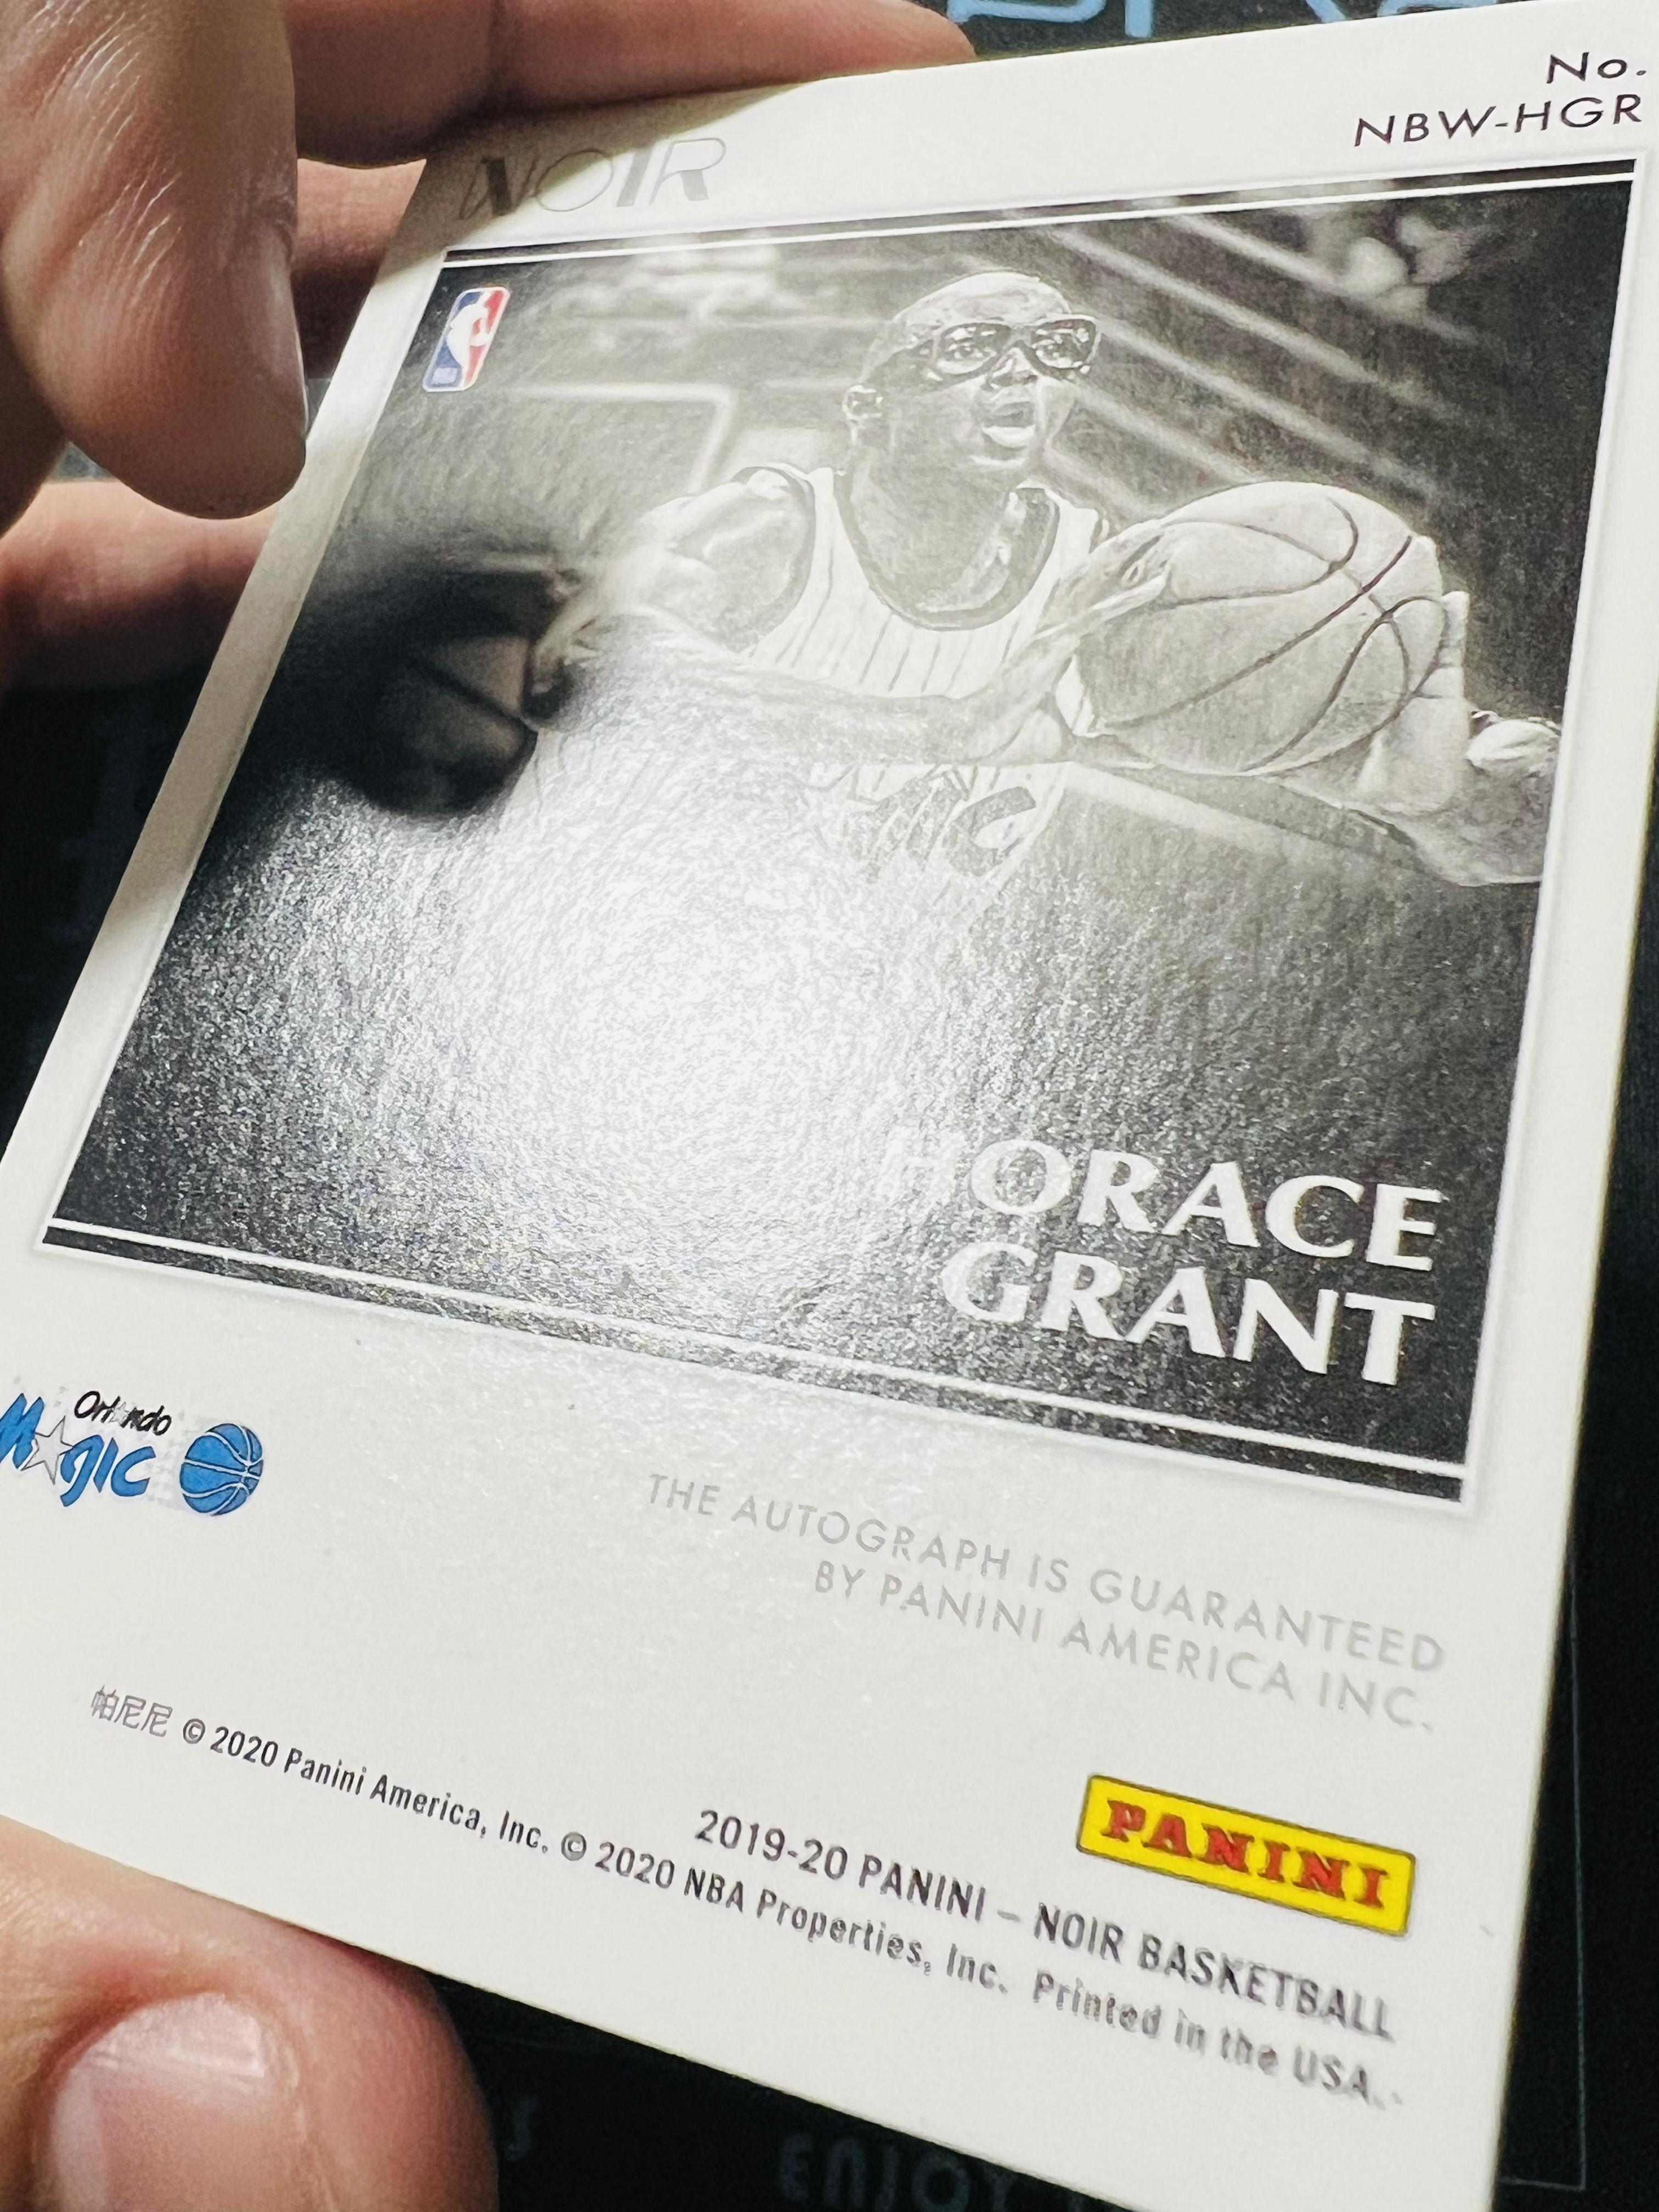 【扒卡拍卖】2019-20 Panini Noir Horace Grant 诺尔 魔术 格兰特 签字 黑白签 99编 压印如图 NXZ0309BK91